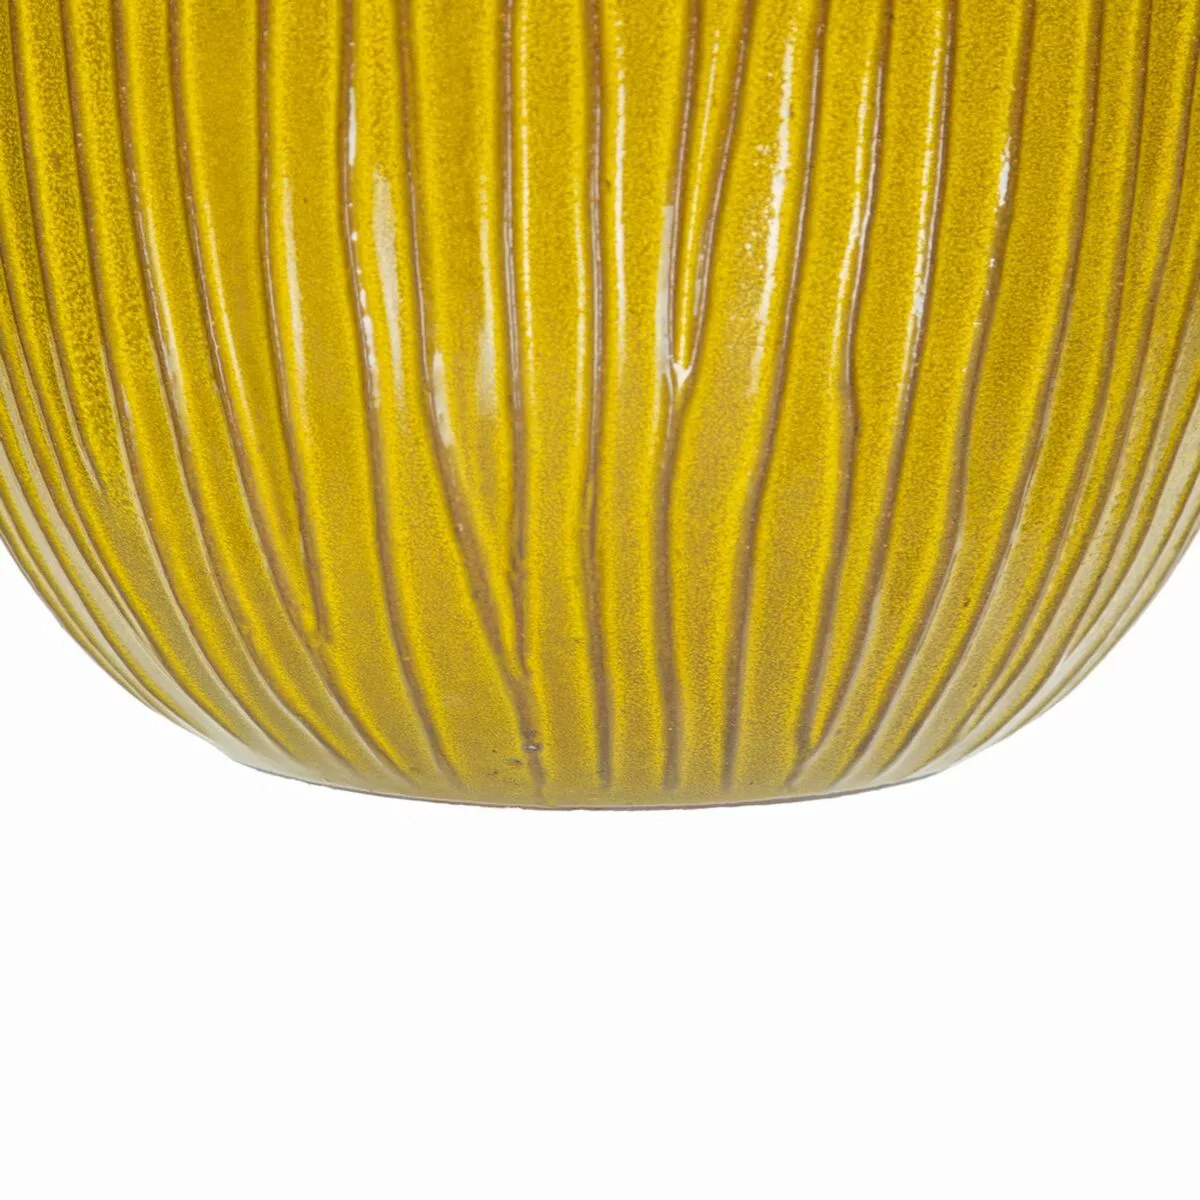 Satz Blumentöpfe 38 X 38 X 35 Cm Aus Keramik Gelb (3 Stücke) günstig online kaufen